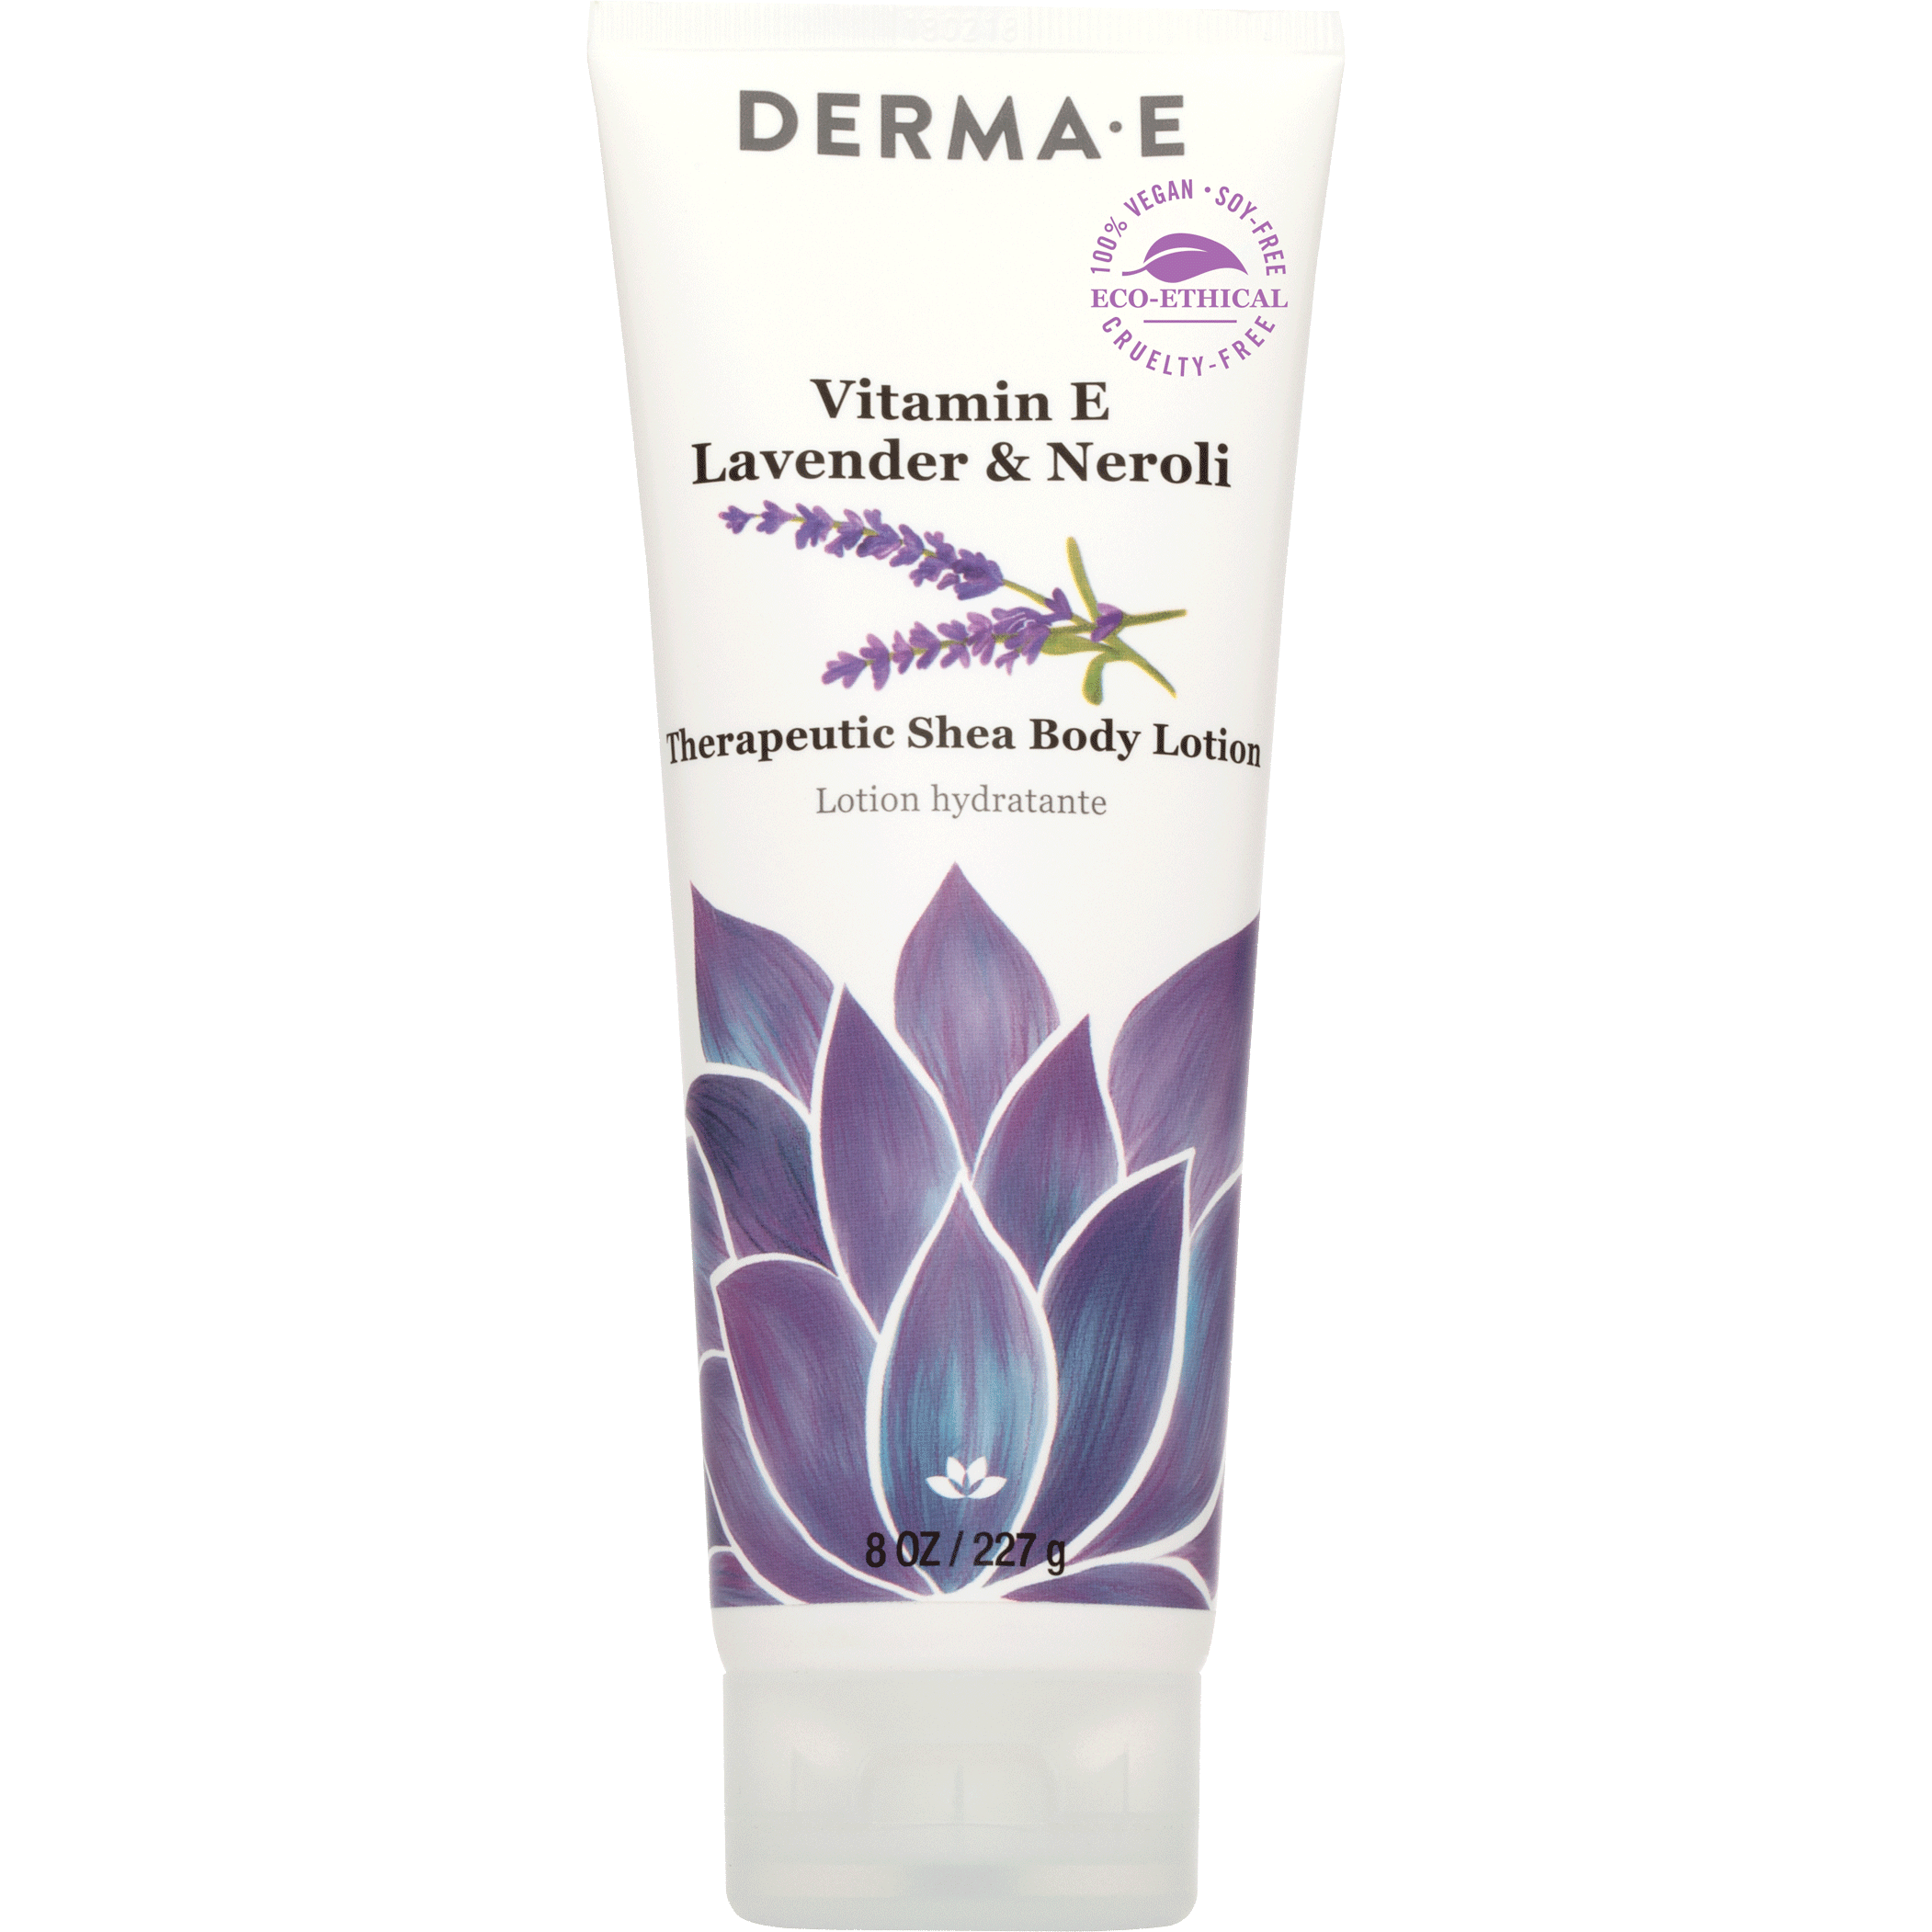 DERMA E Vitamin E Lavender-Neroli Therapeutic Shea Body Lotion